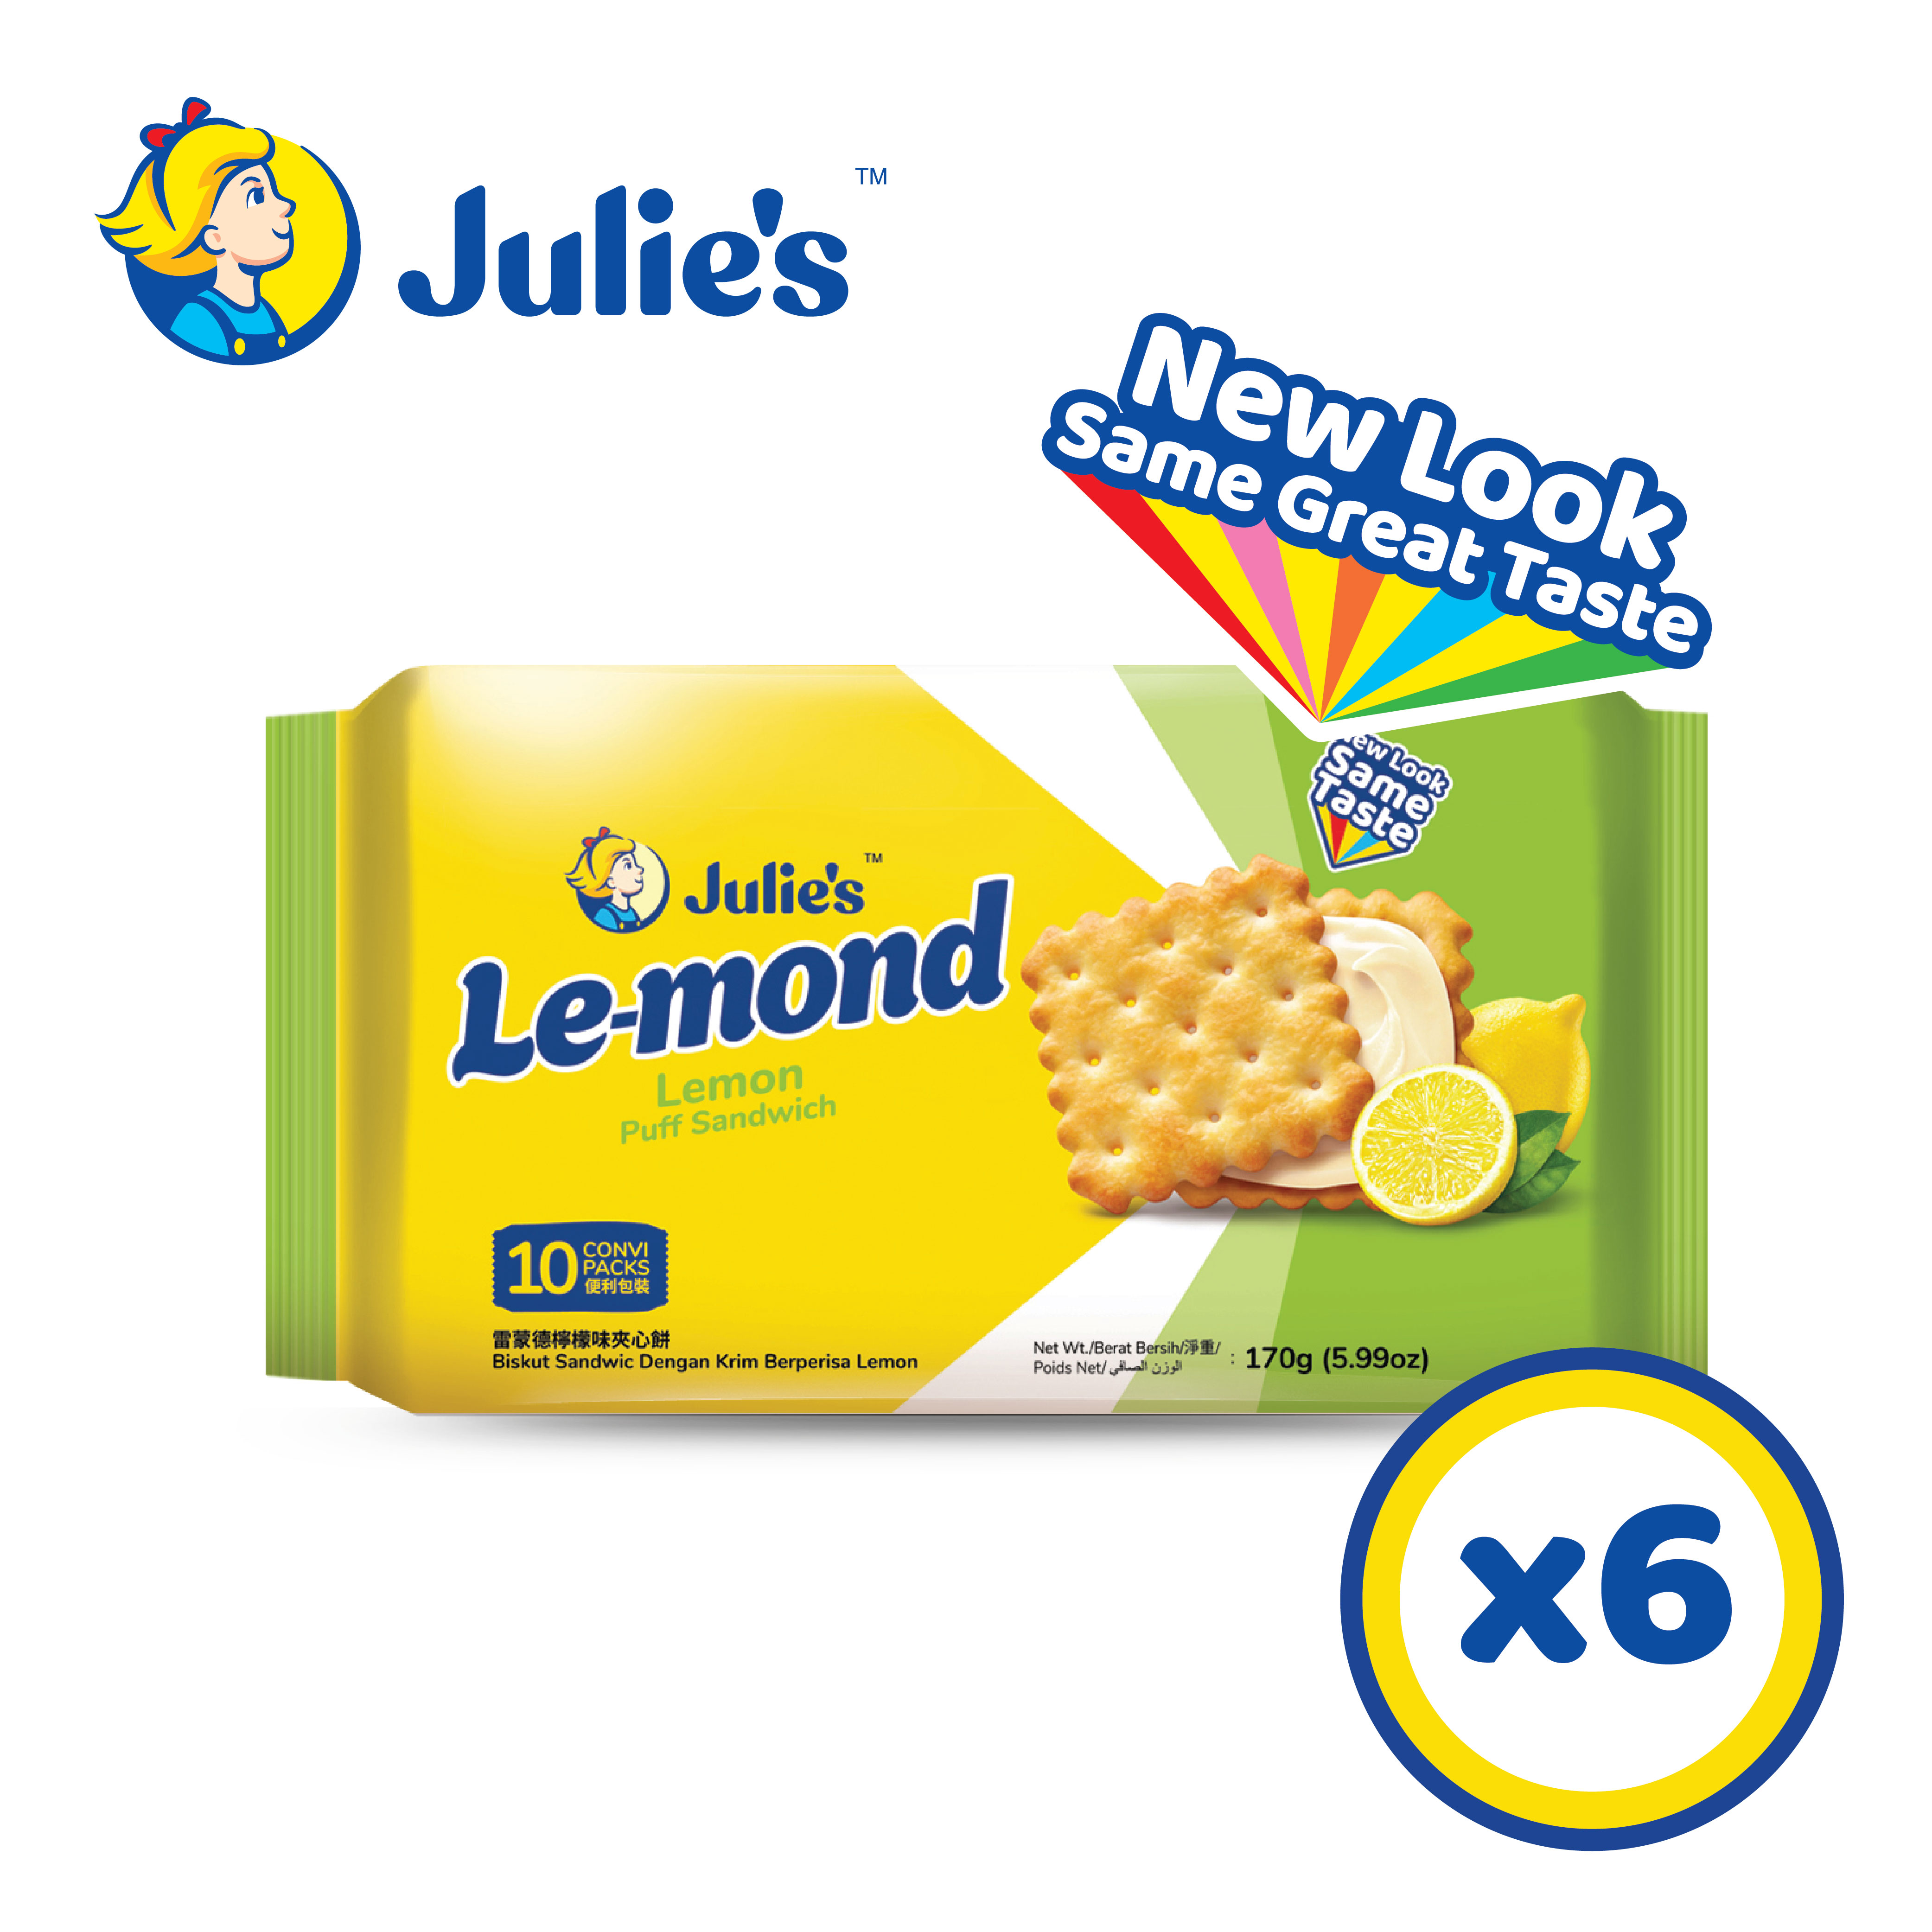 Julie's Le-mond Lemon Sandwich Biscuit 170g x 6 pck